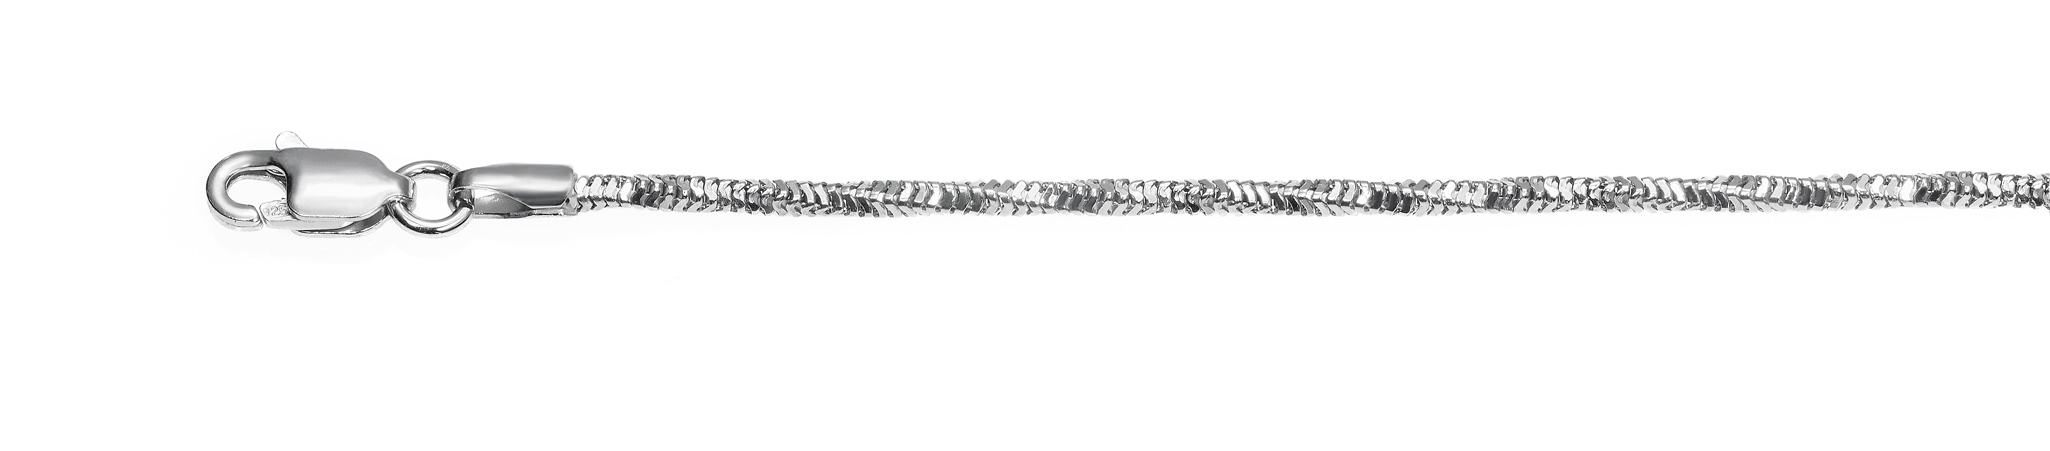 Ref.: 90714 - Diamond cut rhodia snake - Wide 1.4